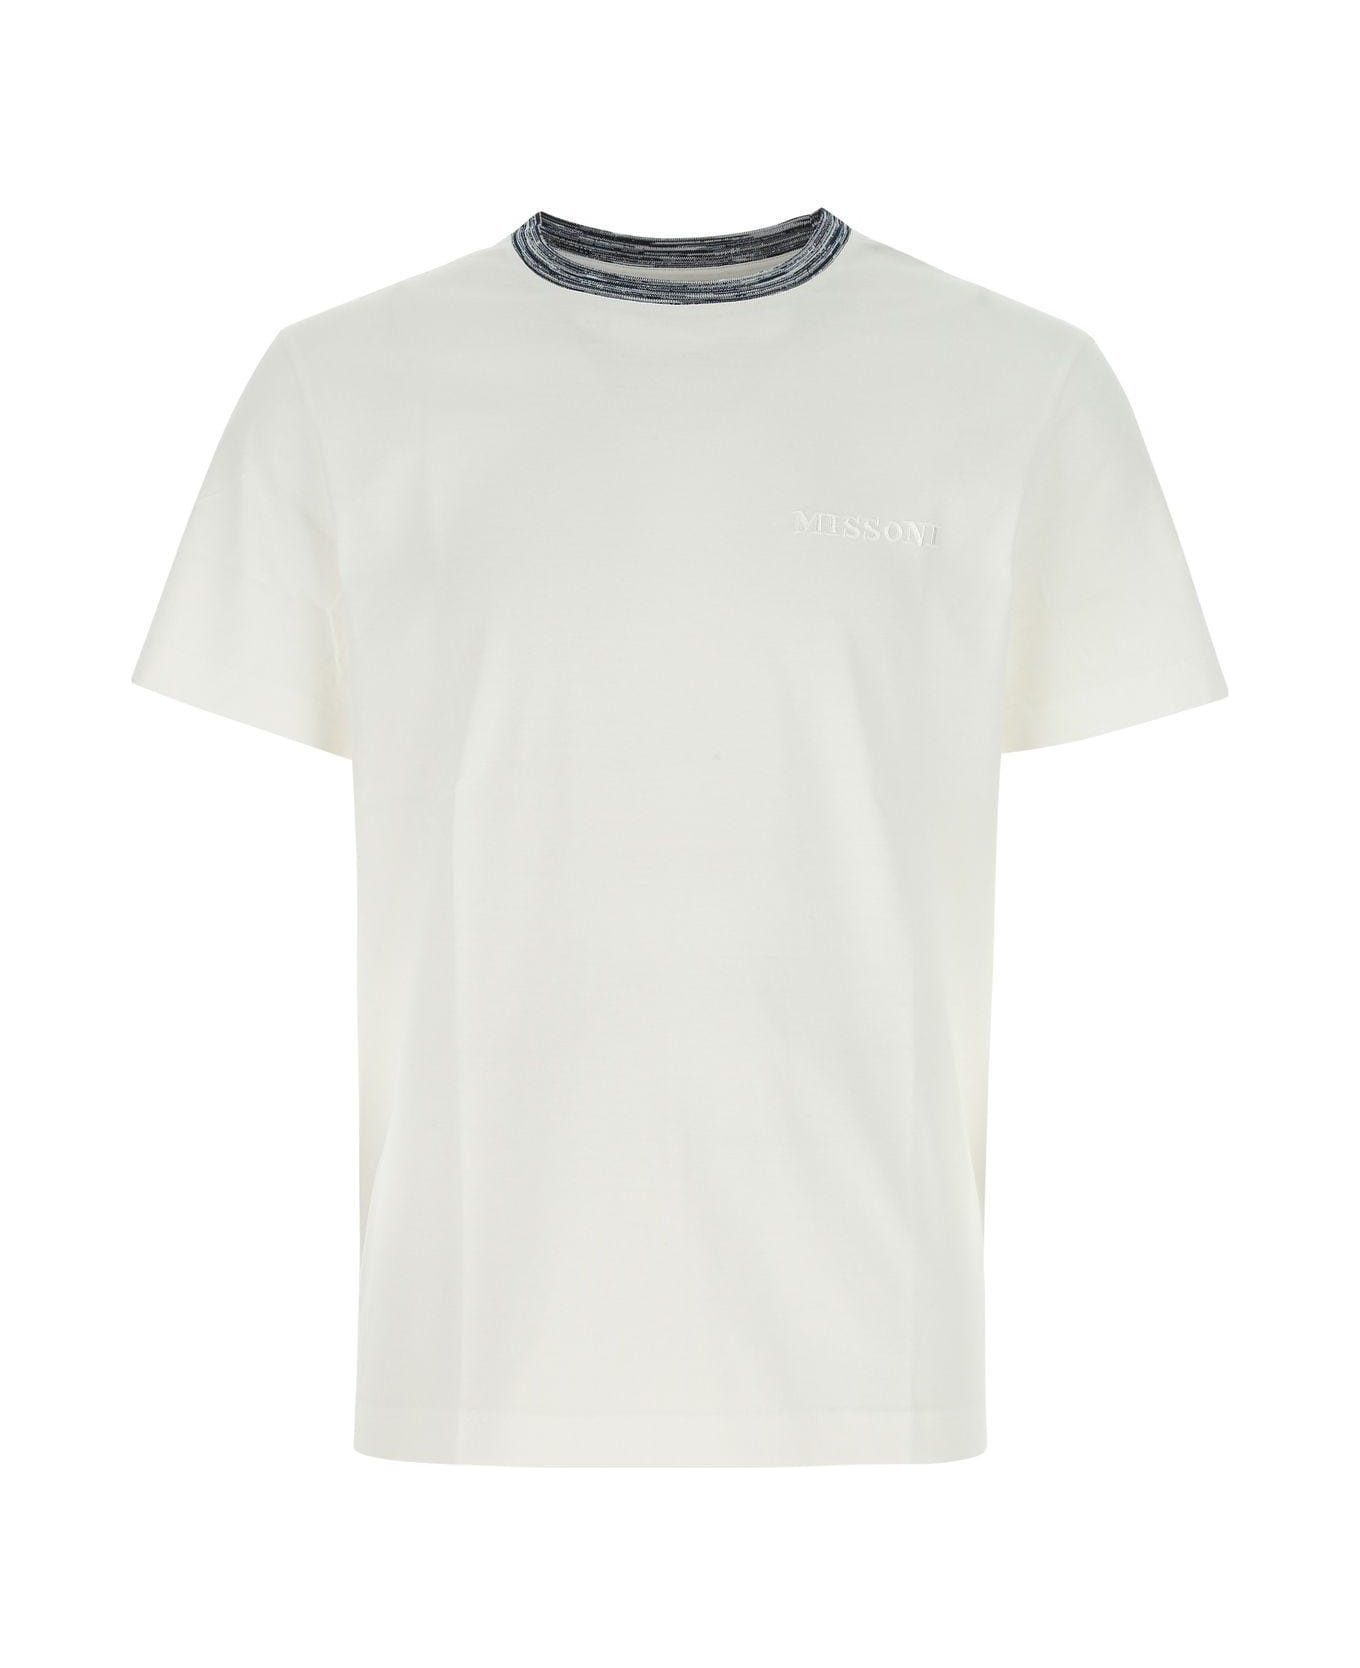 Missoni White Cotton T-shirt Missoni - WHITE